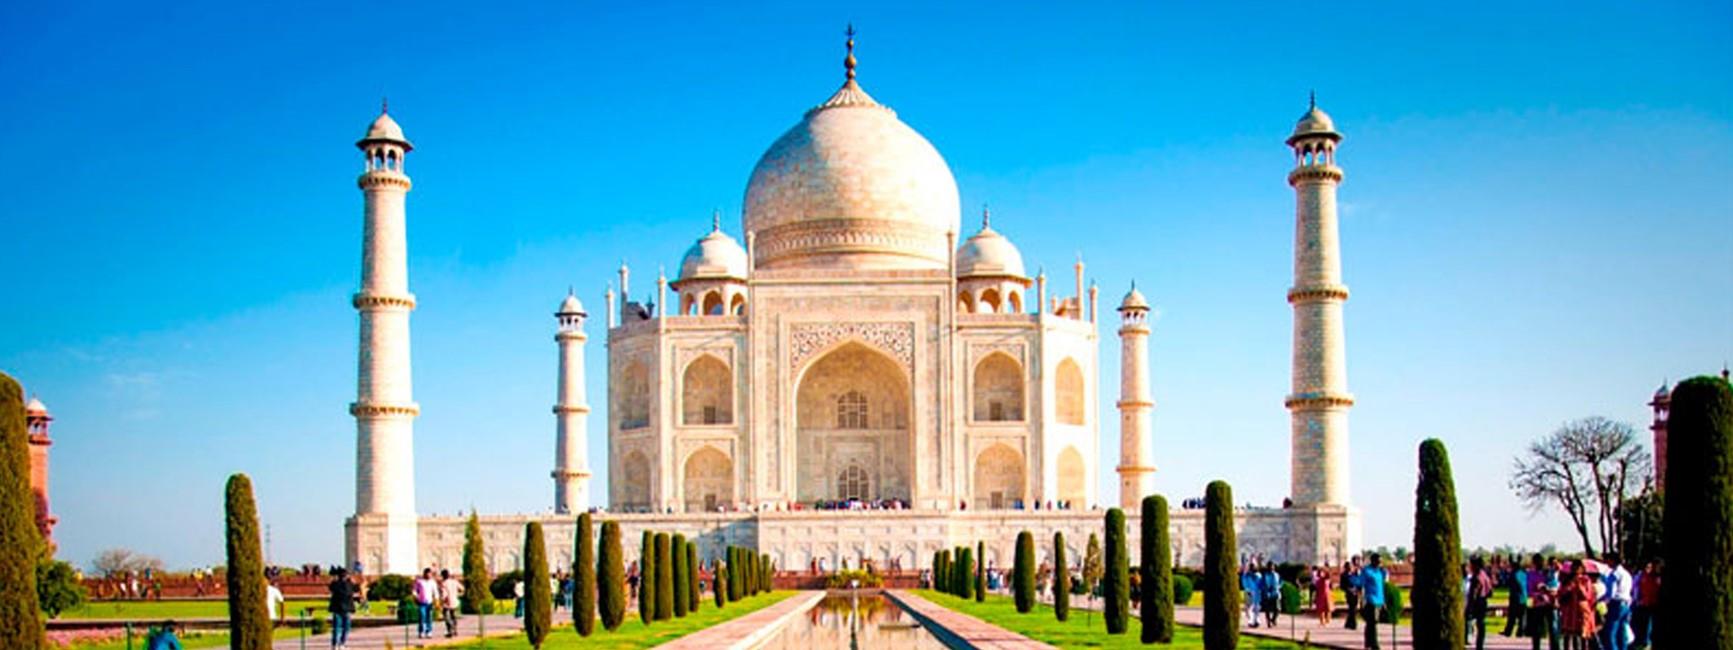 Taj-Mahal-Day-Trip-by-Gatimaan-Express-from-Delhi-1